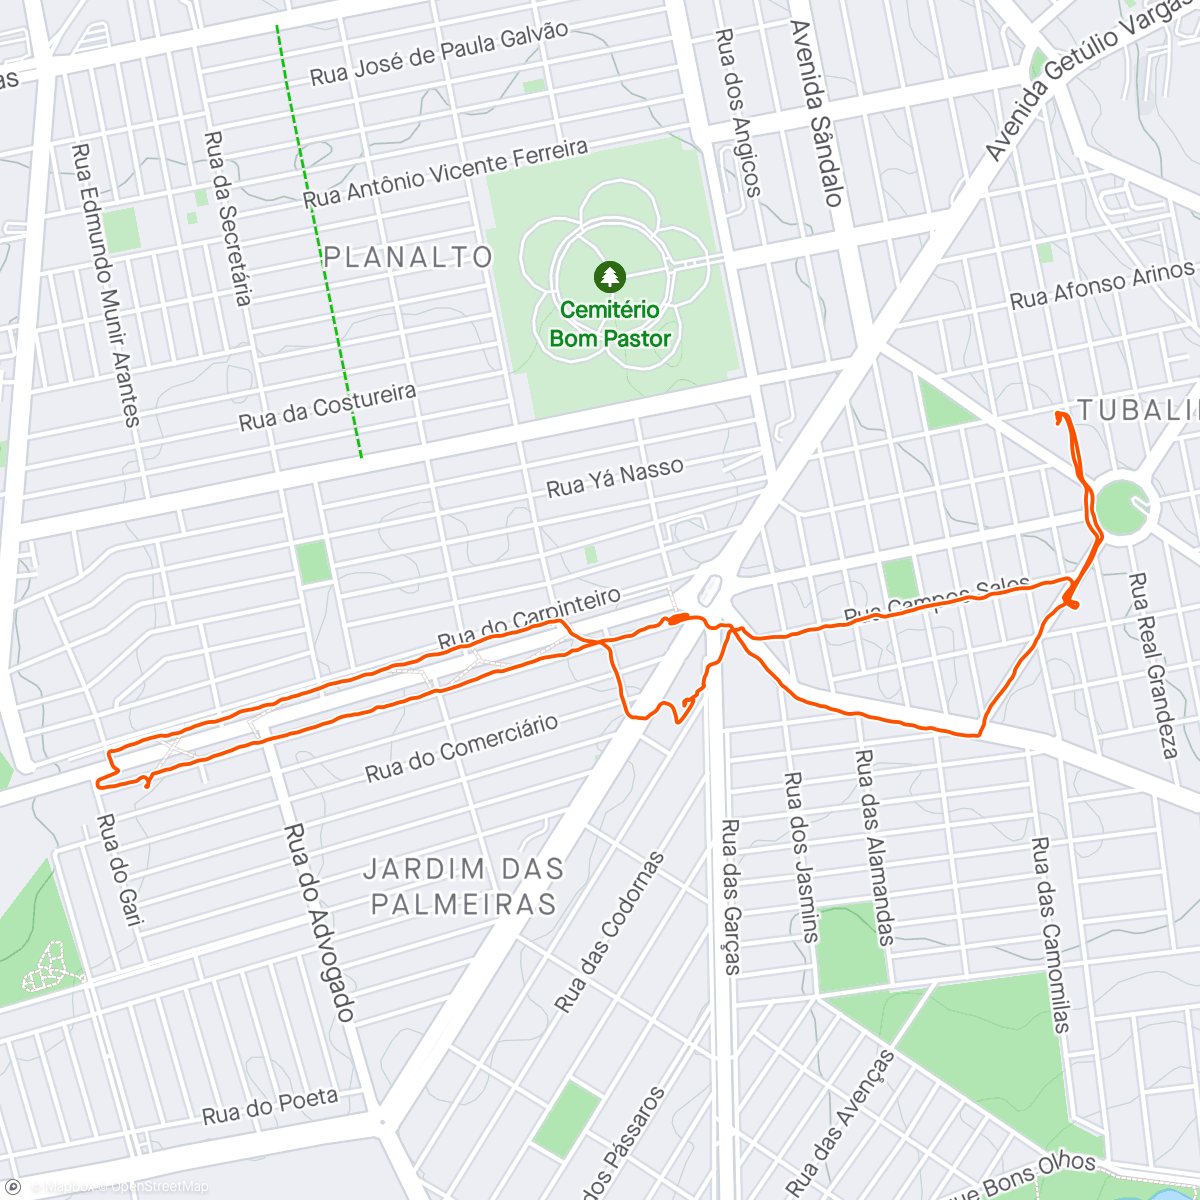 Carte de l'activité ATV. FIS. 116/2.023
Caminhando pelo bairro 
6 kms c/

@kyraa_labrador